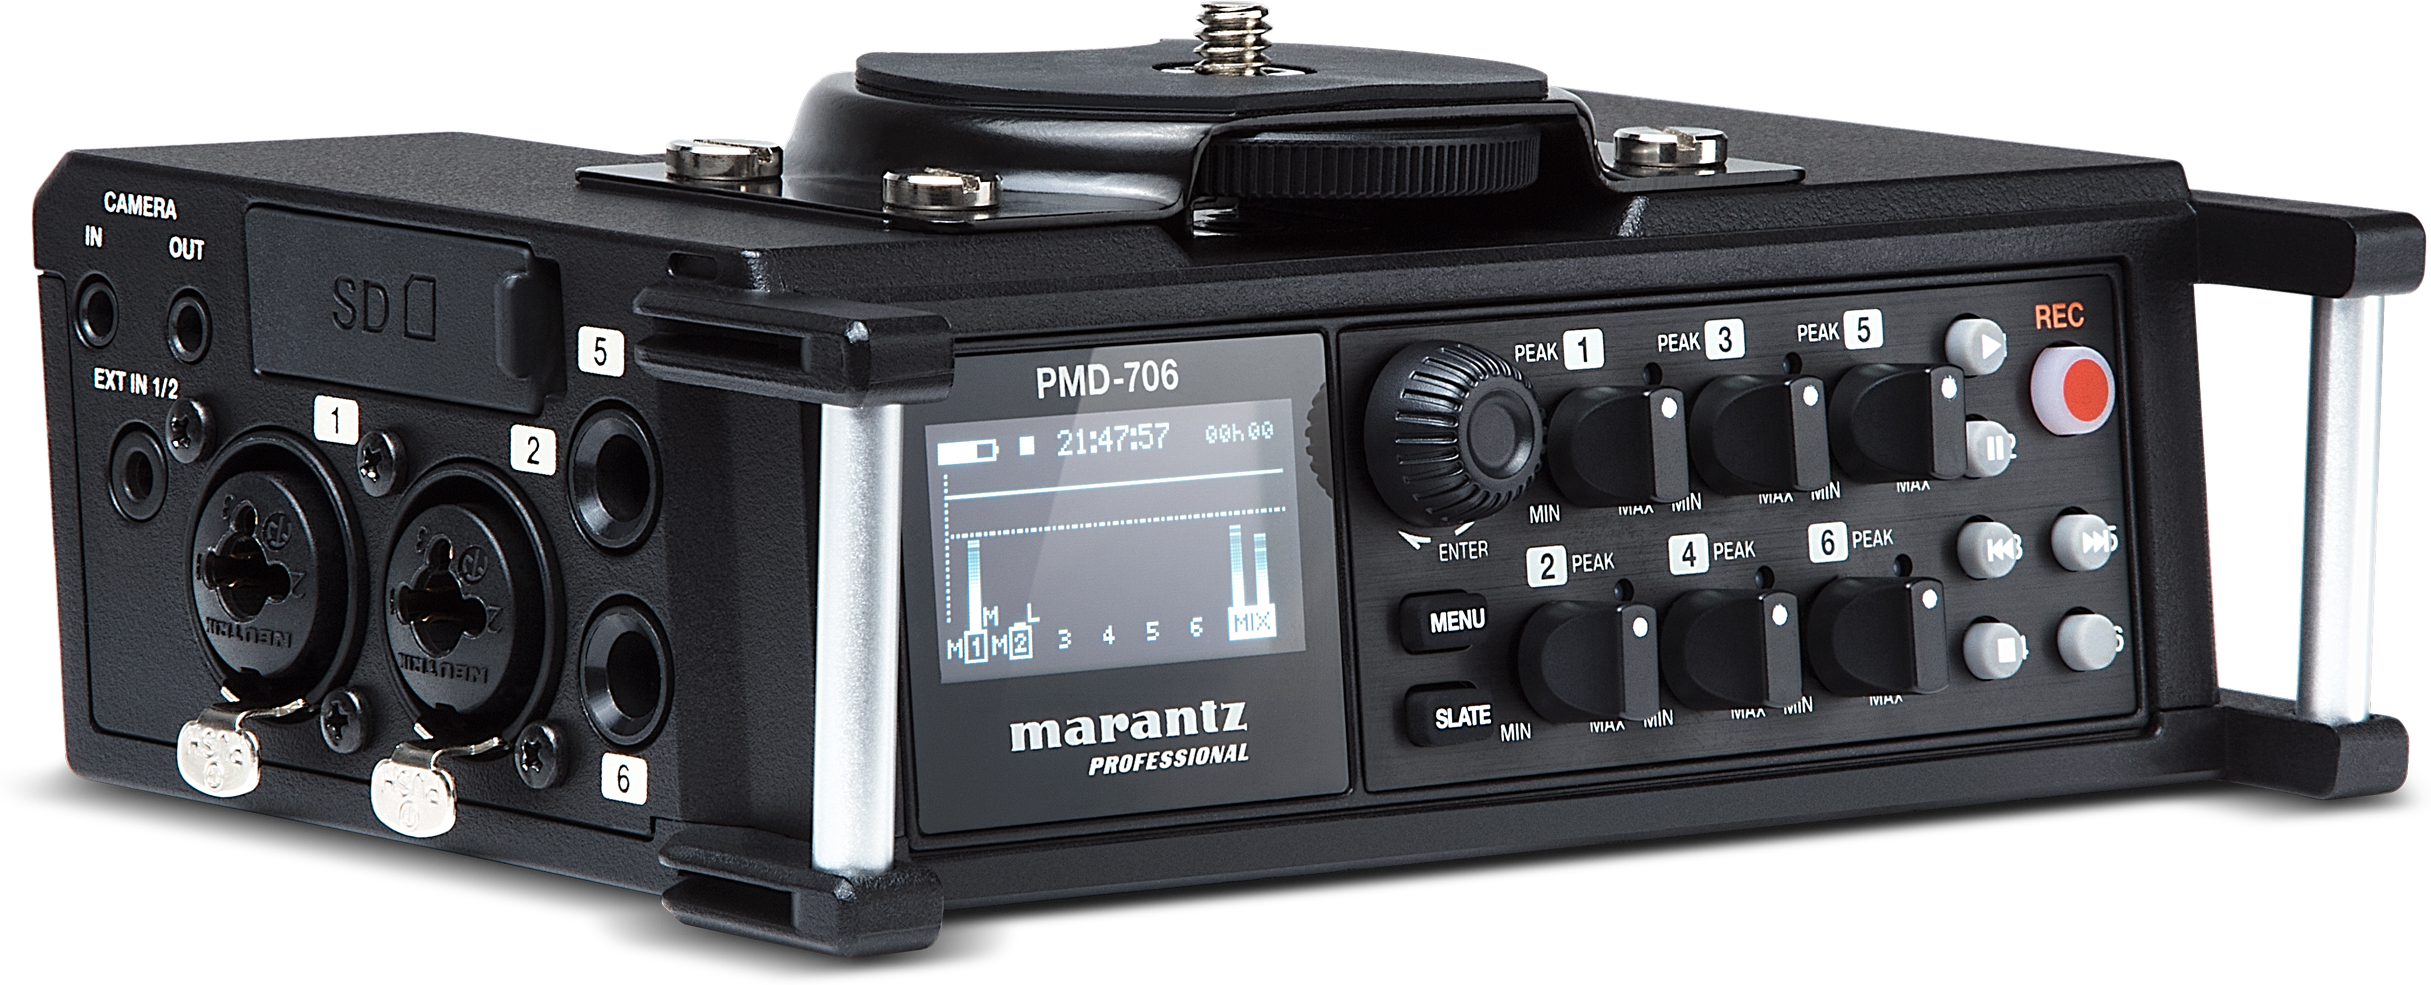 Marantz Pmd-706 - Portable recorder - Main picture